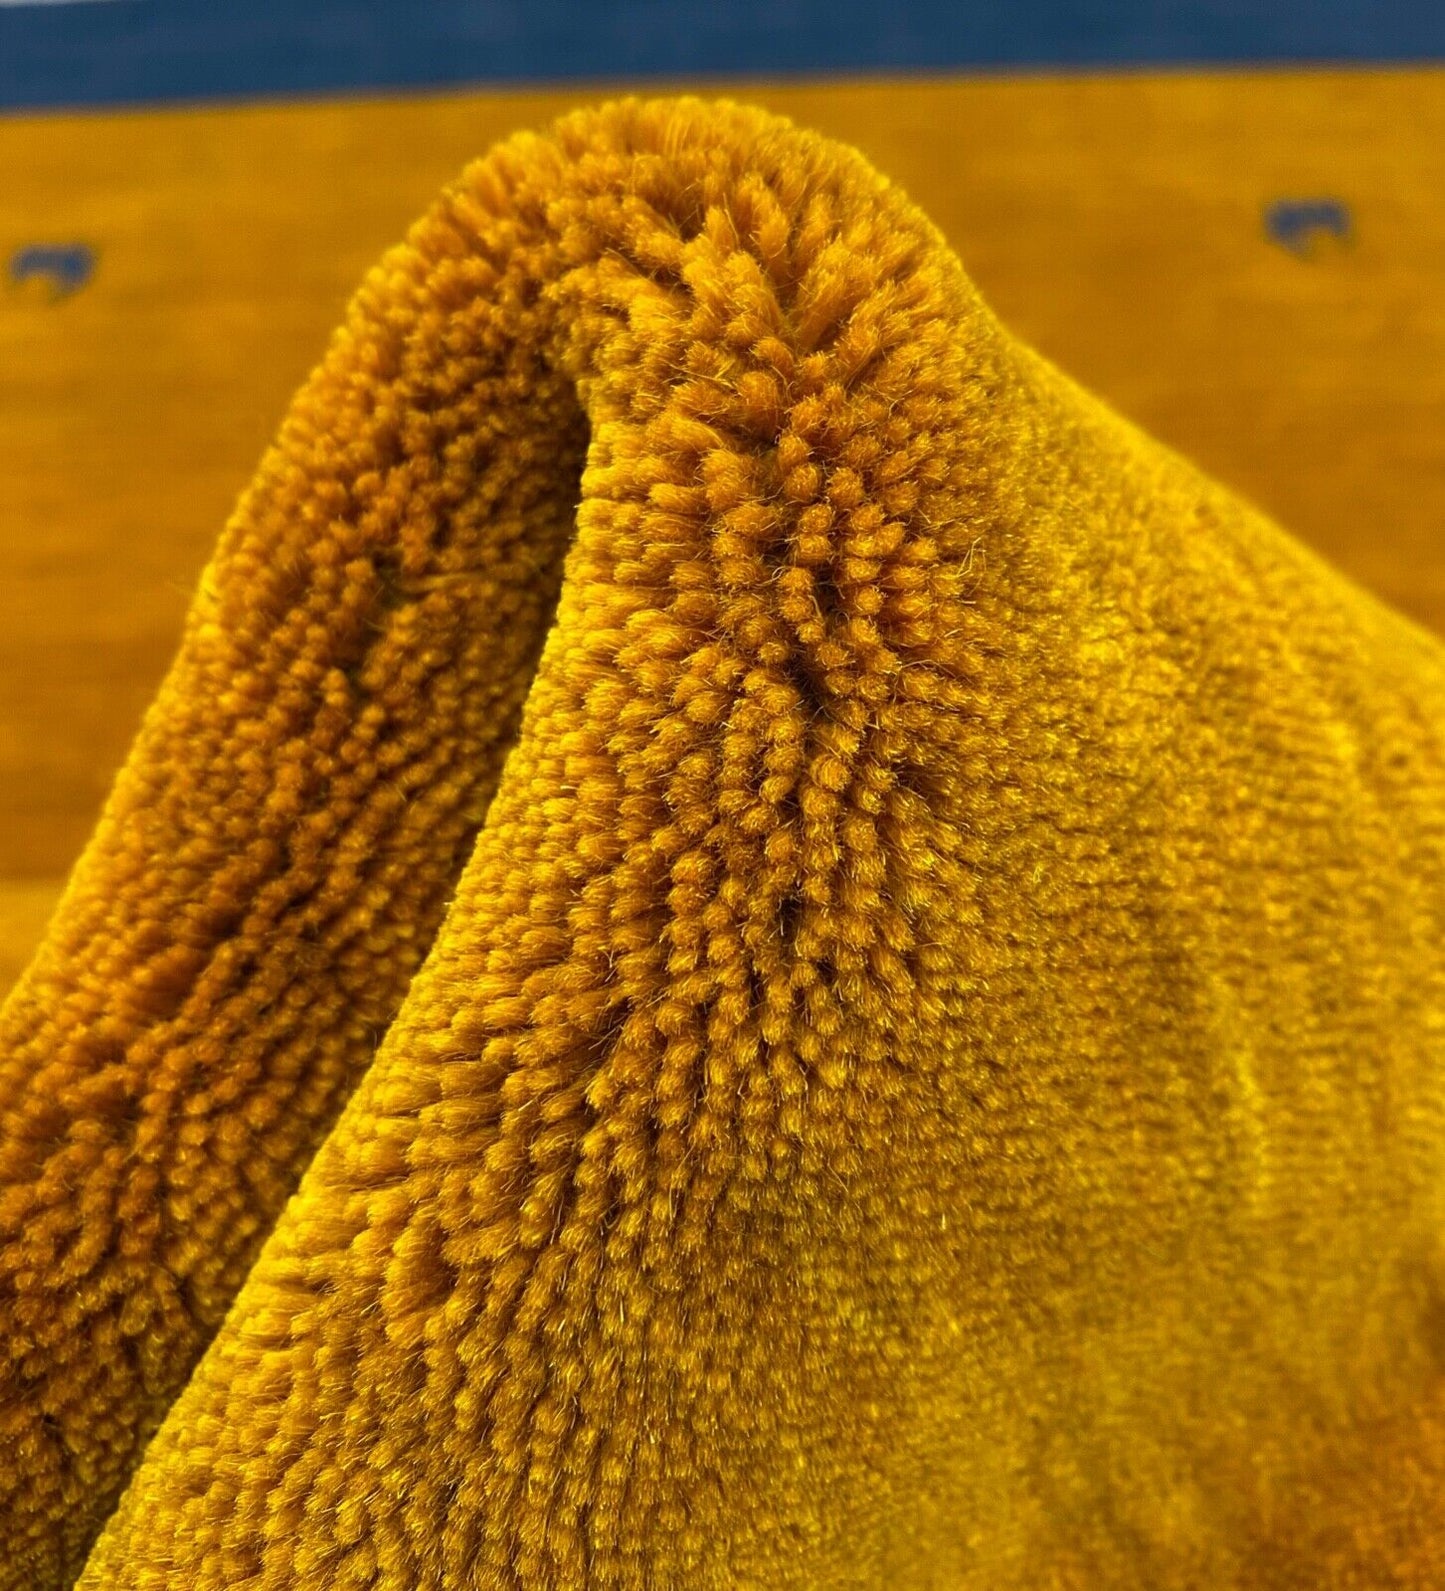 Gabbeh Teppich 100% Wolle 140x200 cm Gold Grün Rot Handgewebt Orientteppich Bunt